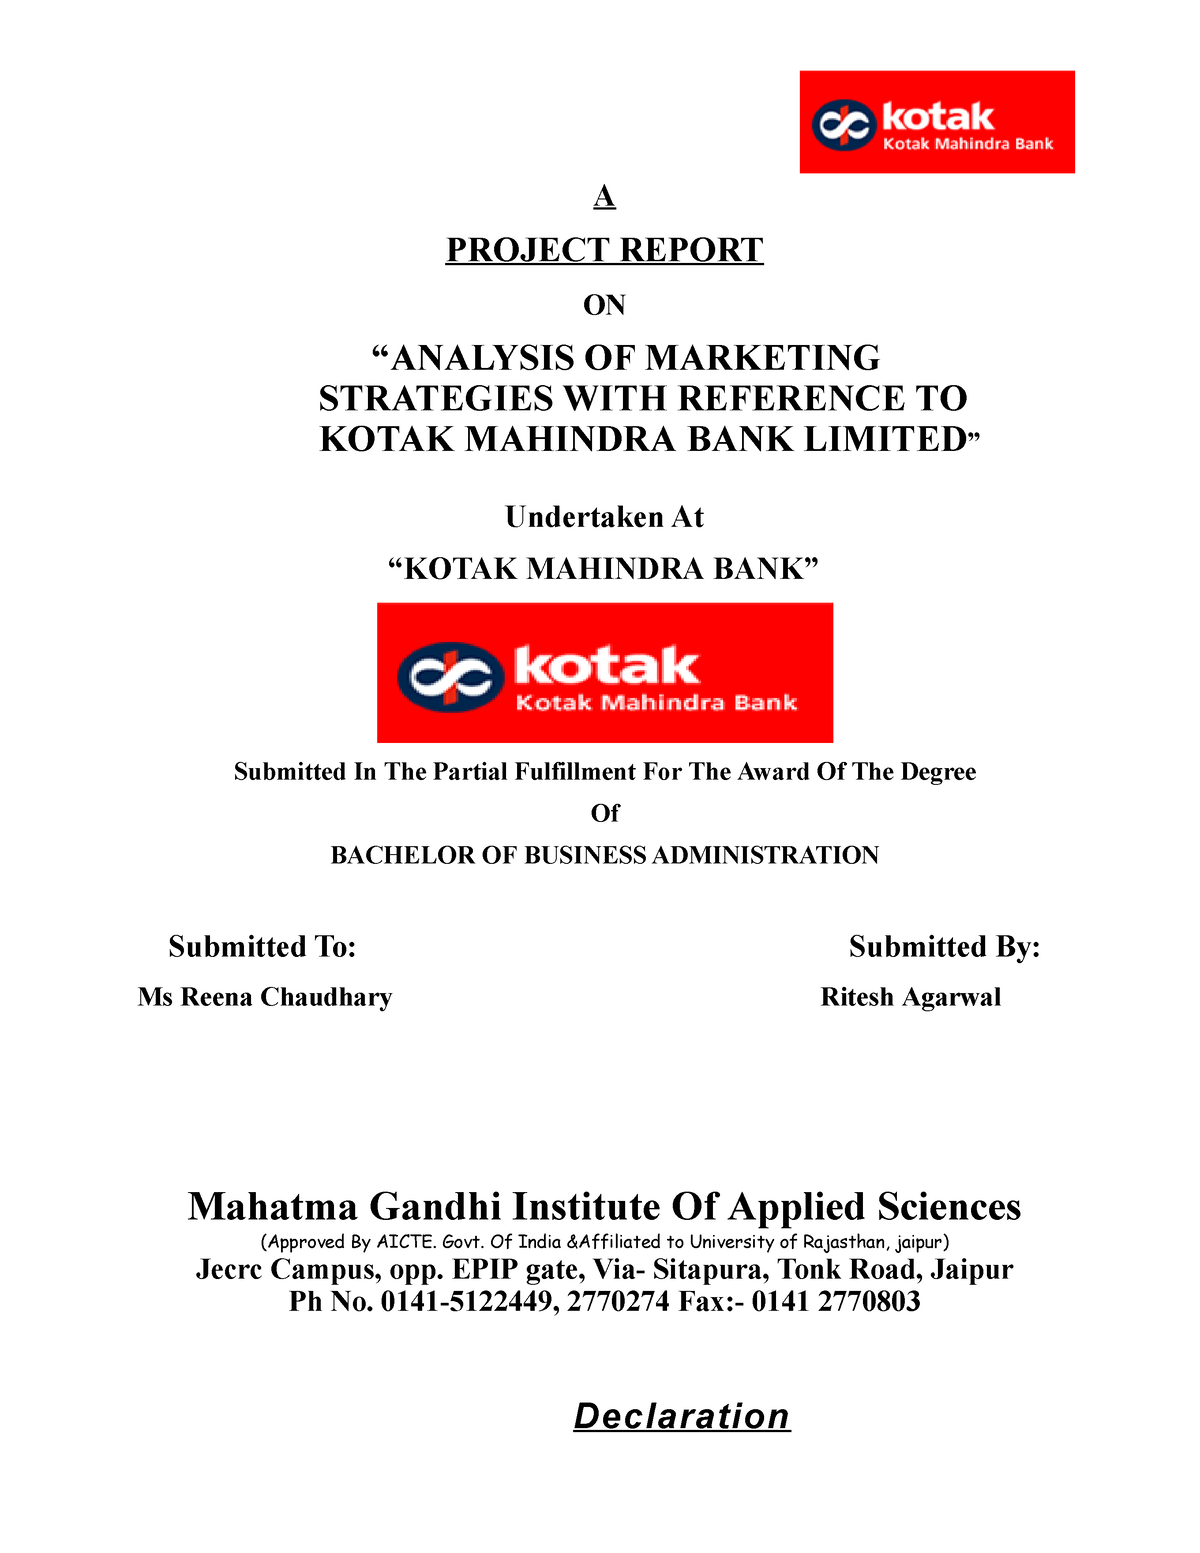 research report on kotak mahindra bank